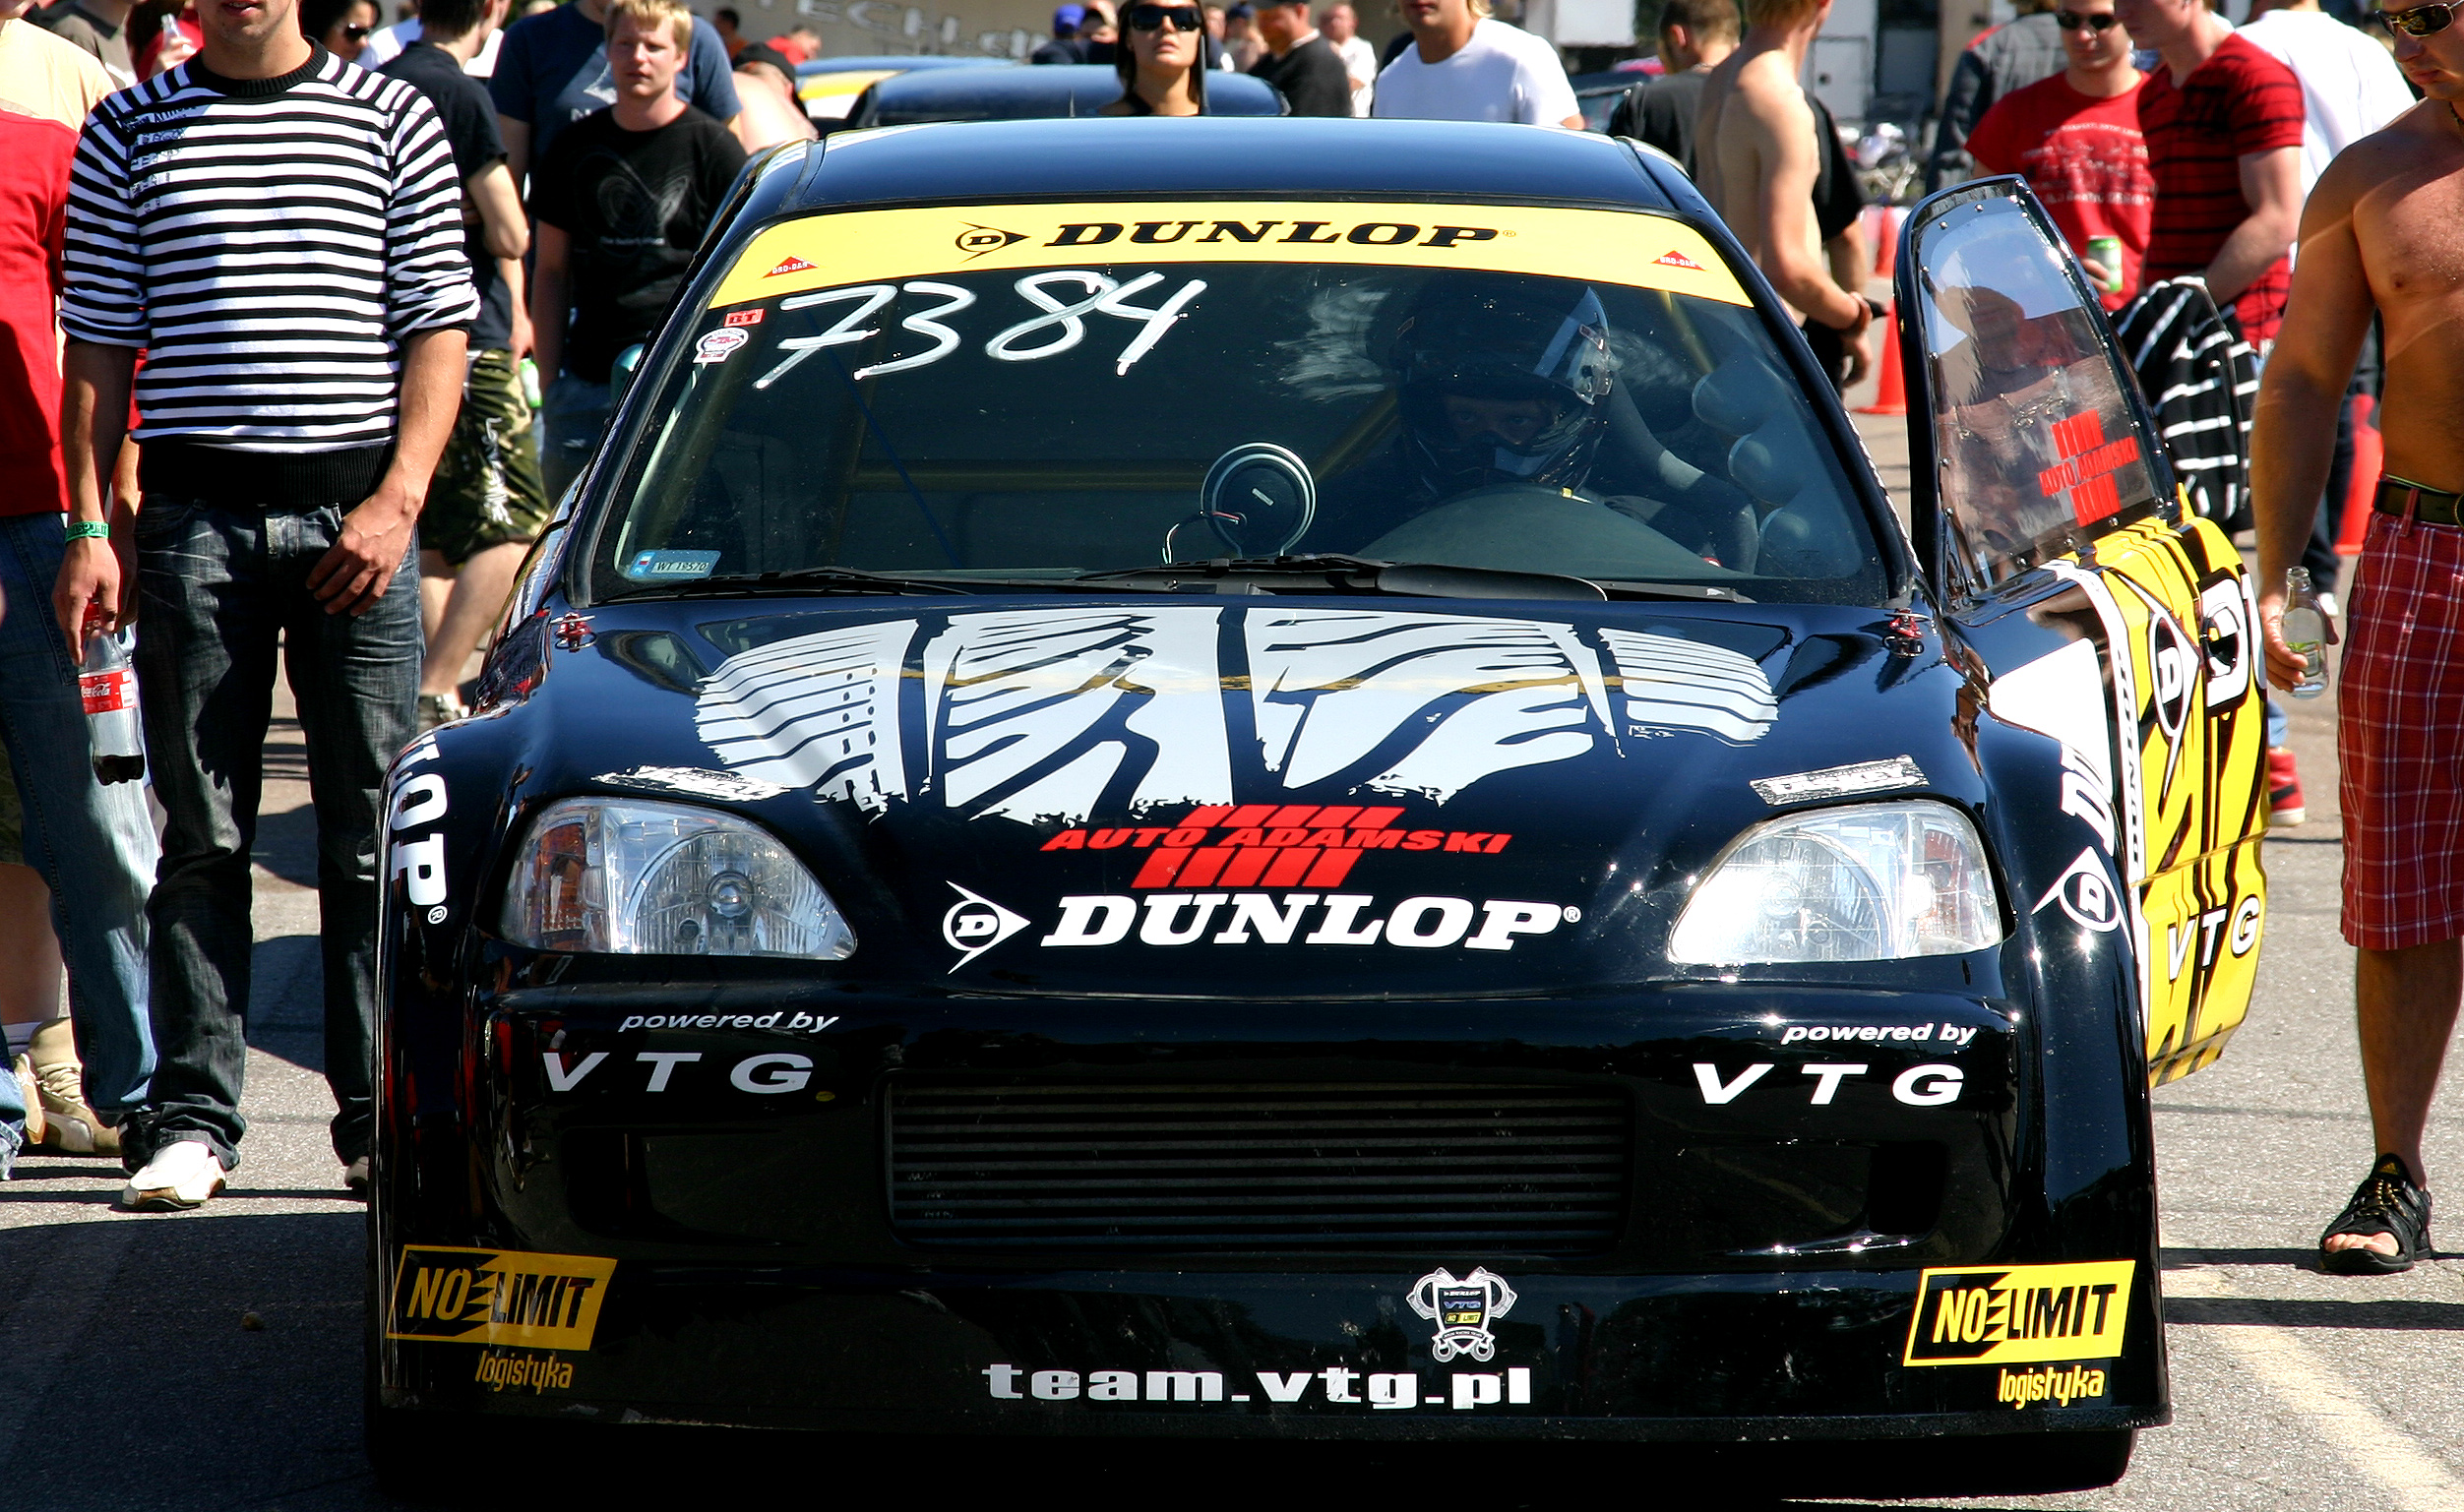  1999 Honda Civic EK4 Dunlop NoLimit VTG